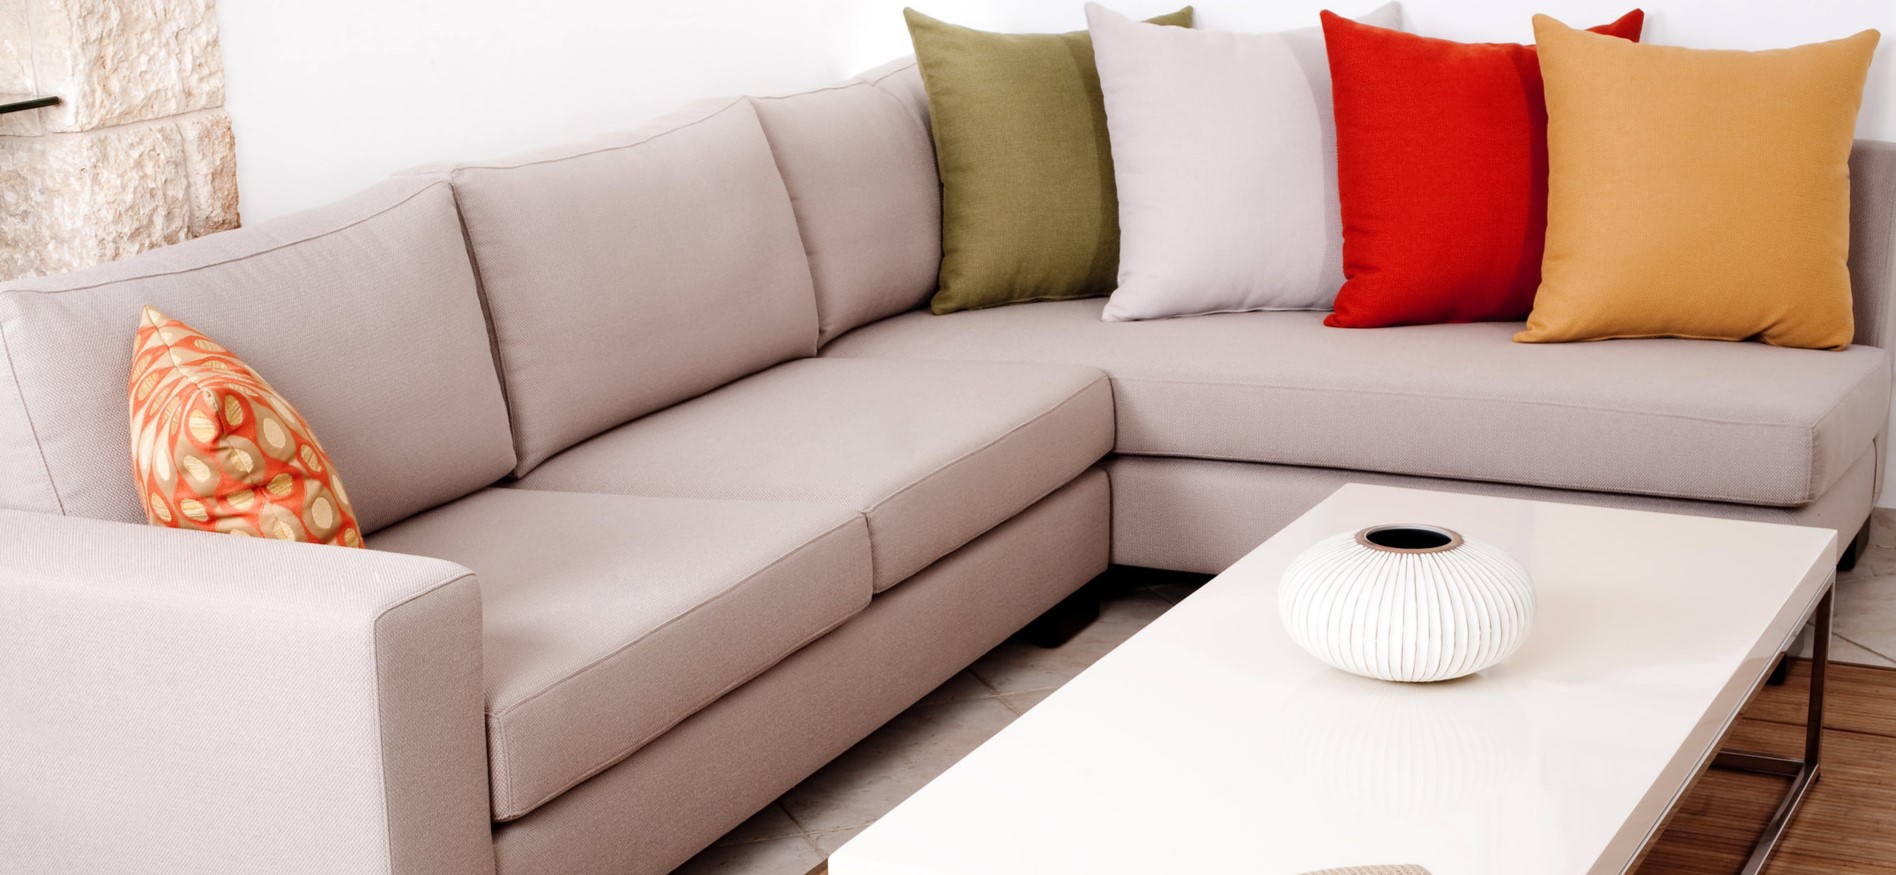 Цветные декоративные подушки идеально дополняют светлый диван